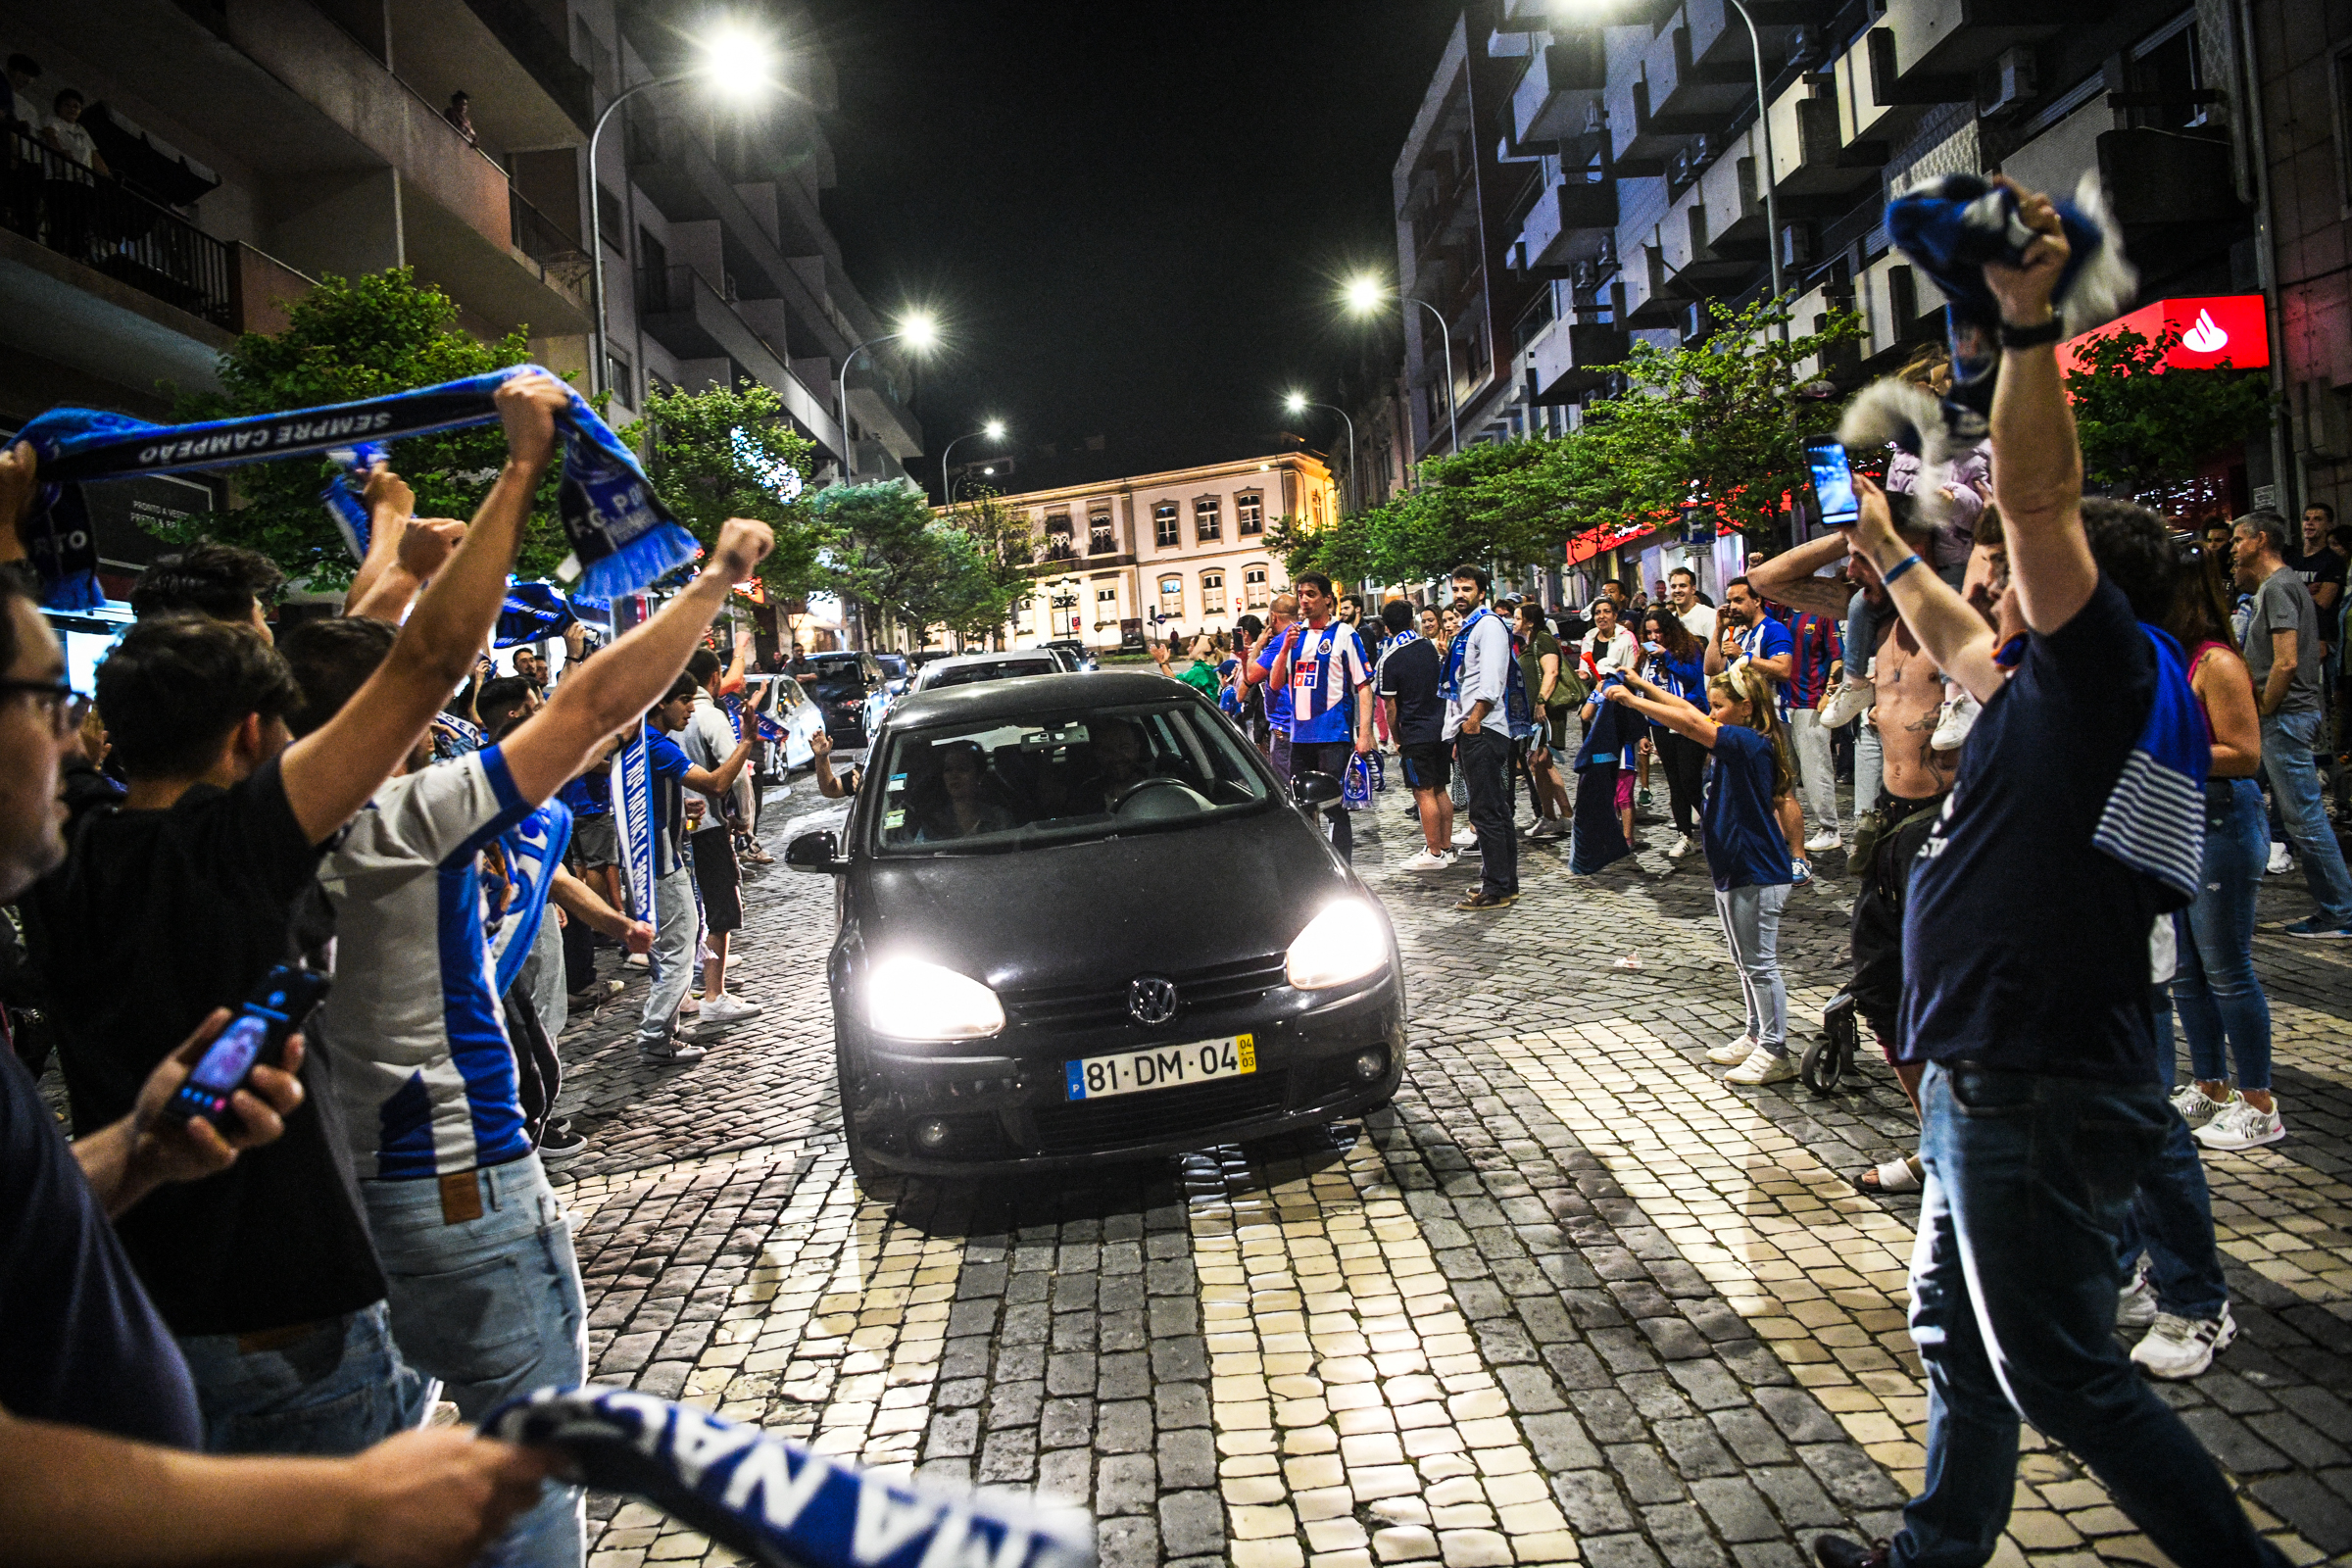 FC Porto despede-se de Viseu com triunfo sobre o campeão russo